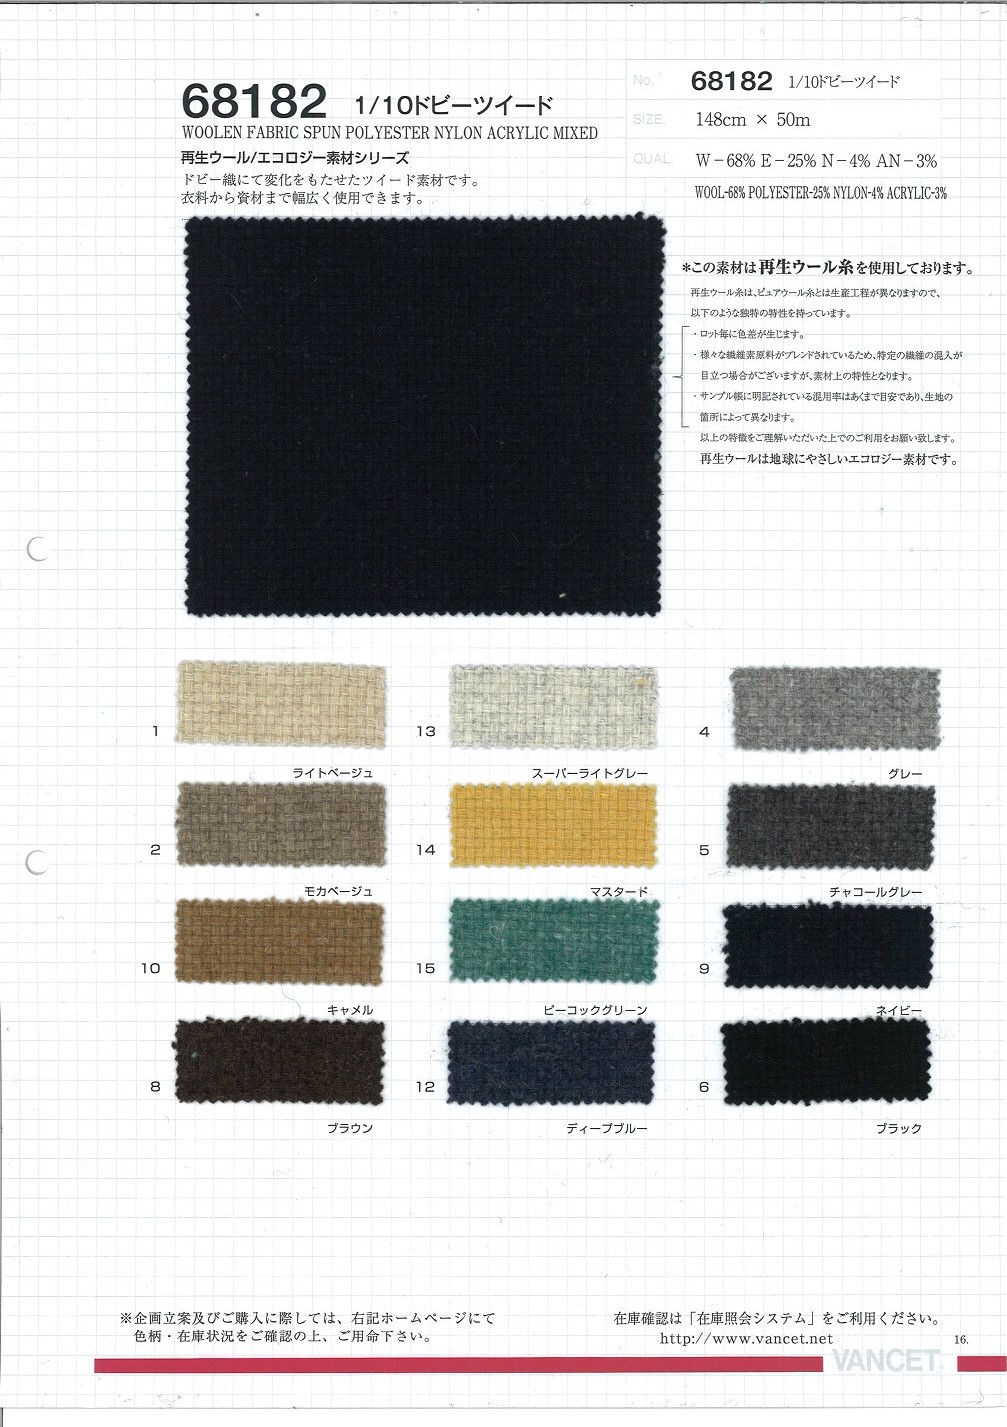 68182 1/10 Dobby Tweed[Textile / Fabric] VANCET